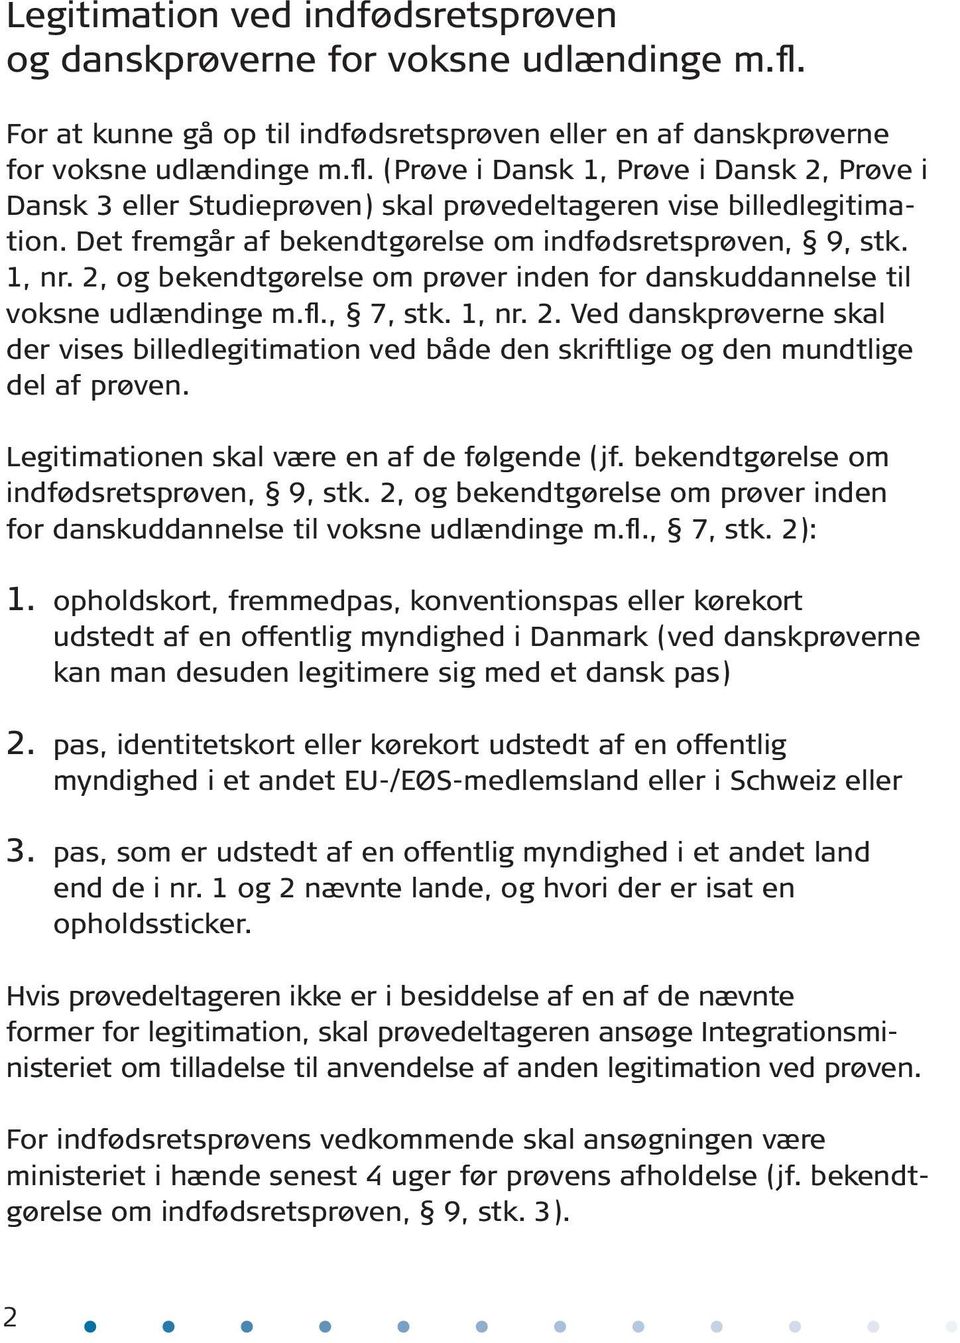 Legitimationen skal være en af de følgende (jf. bekendtgørelse om indfødsretsprøven, 9, stk. 2, og bekendtgørelse om prøver inden for danskuddannelse til voksne udlændinge m.fl., 7, stk. 2): 1.